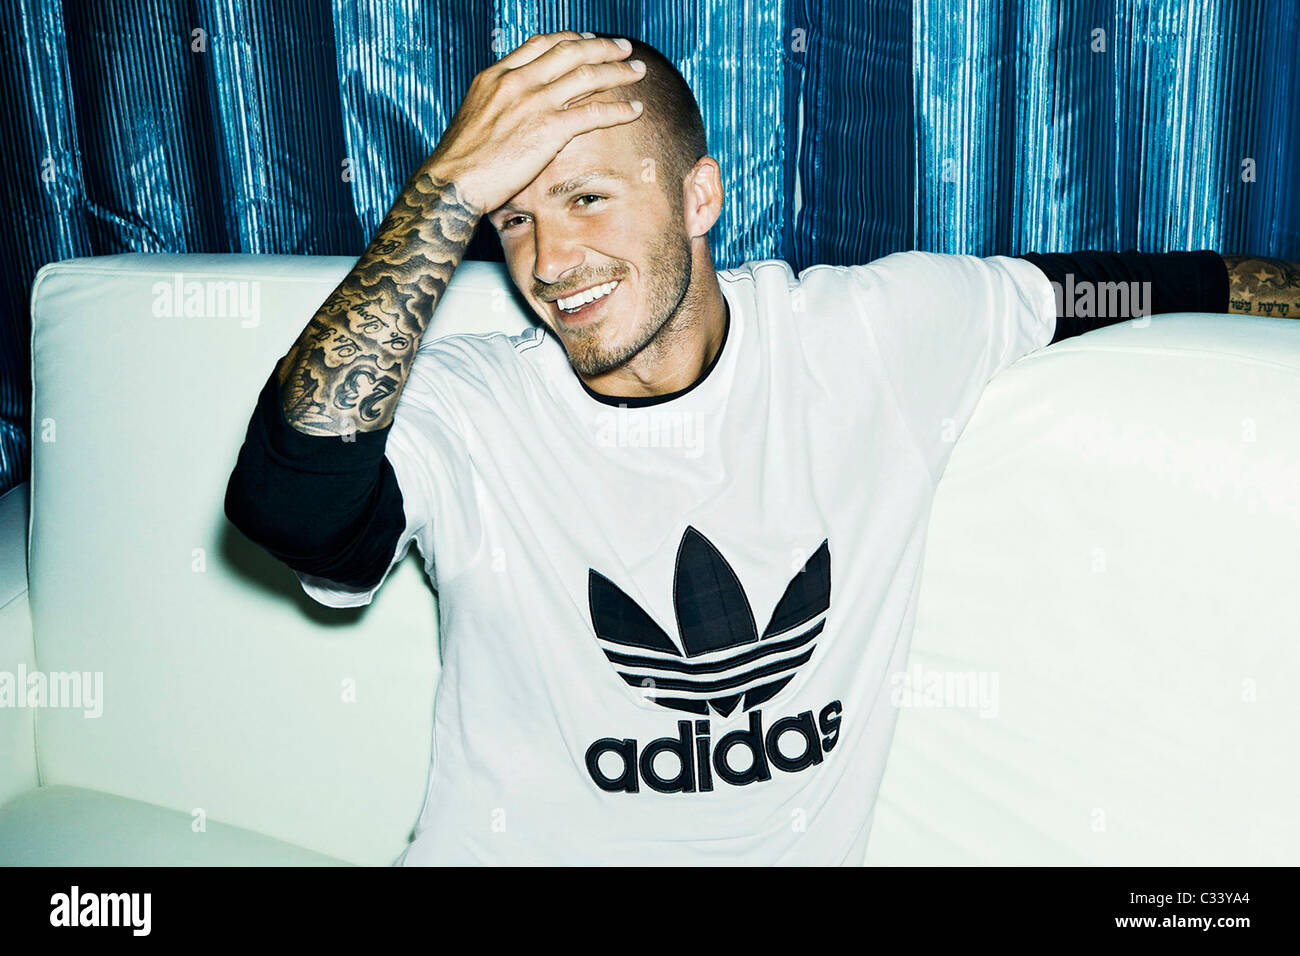 David Beckham aparece en la última campaña publicitaria de adidas Originals, "House Party", para celebrar "60 Años de Soles and Stripes stock - Alamy